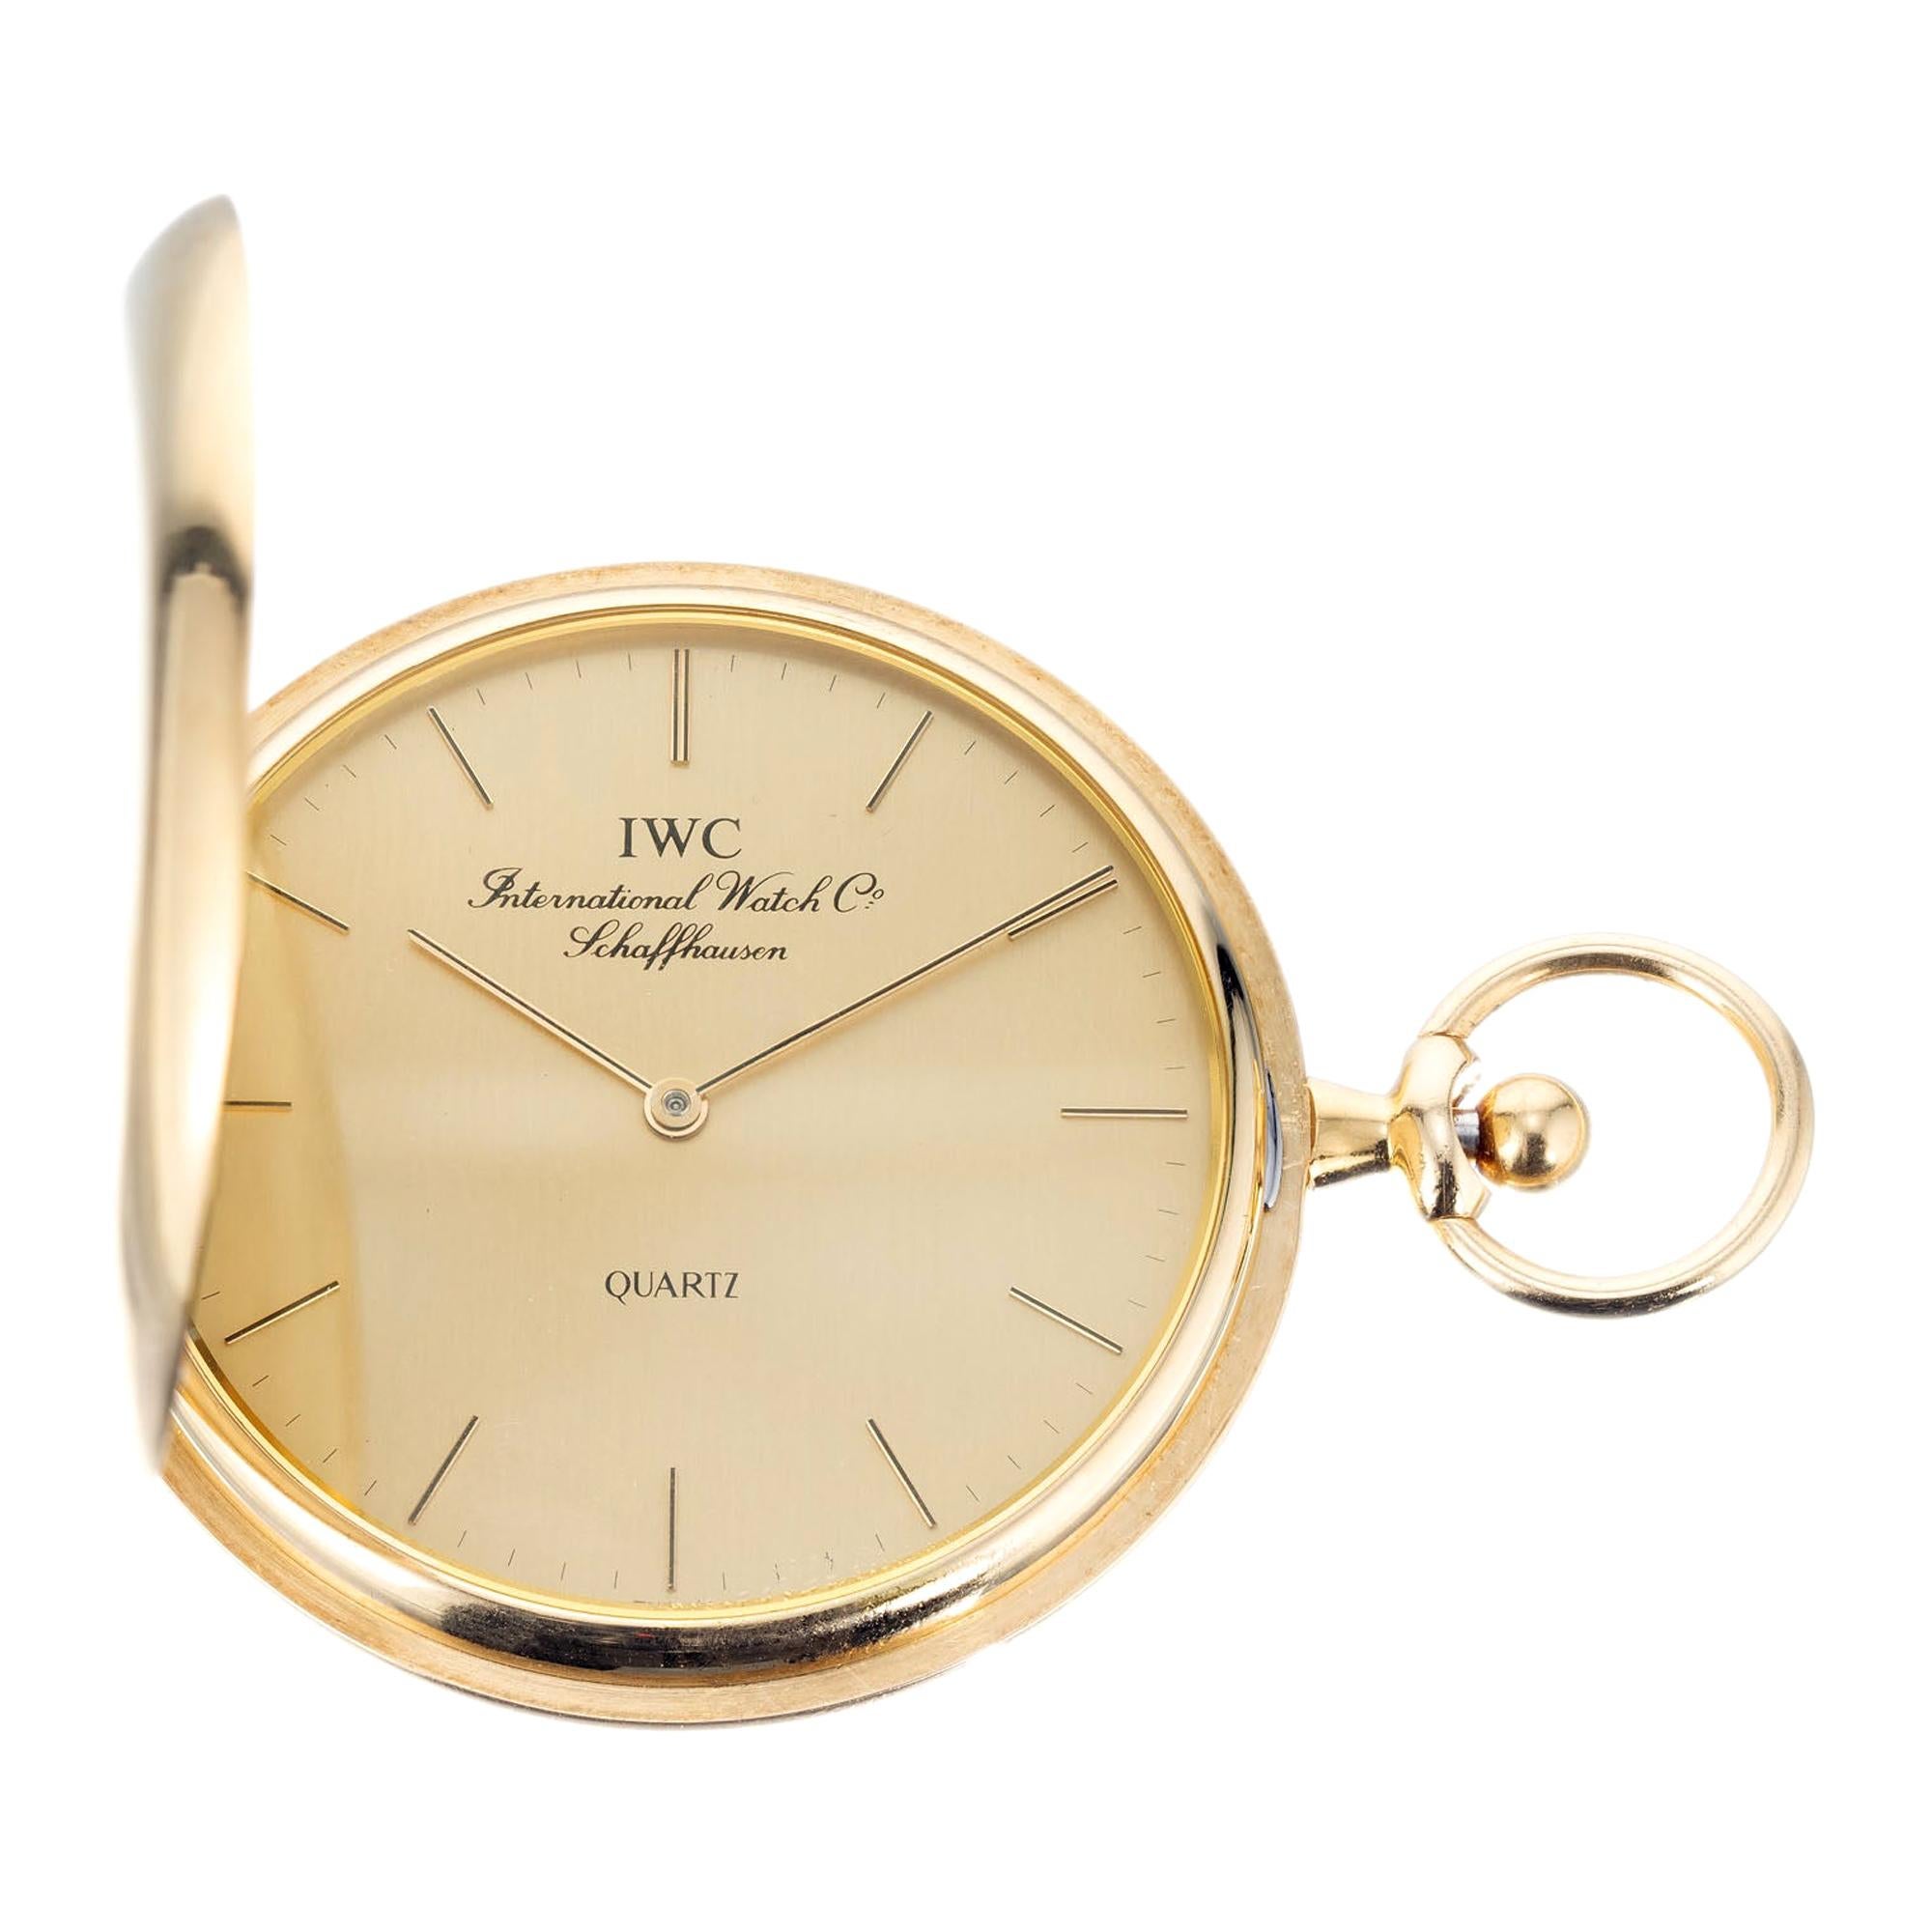 International Watch Company Taschenuhr mit goldenem Jagdgehäuse